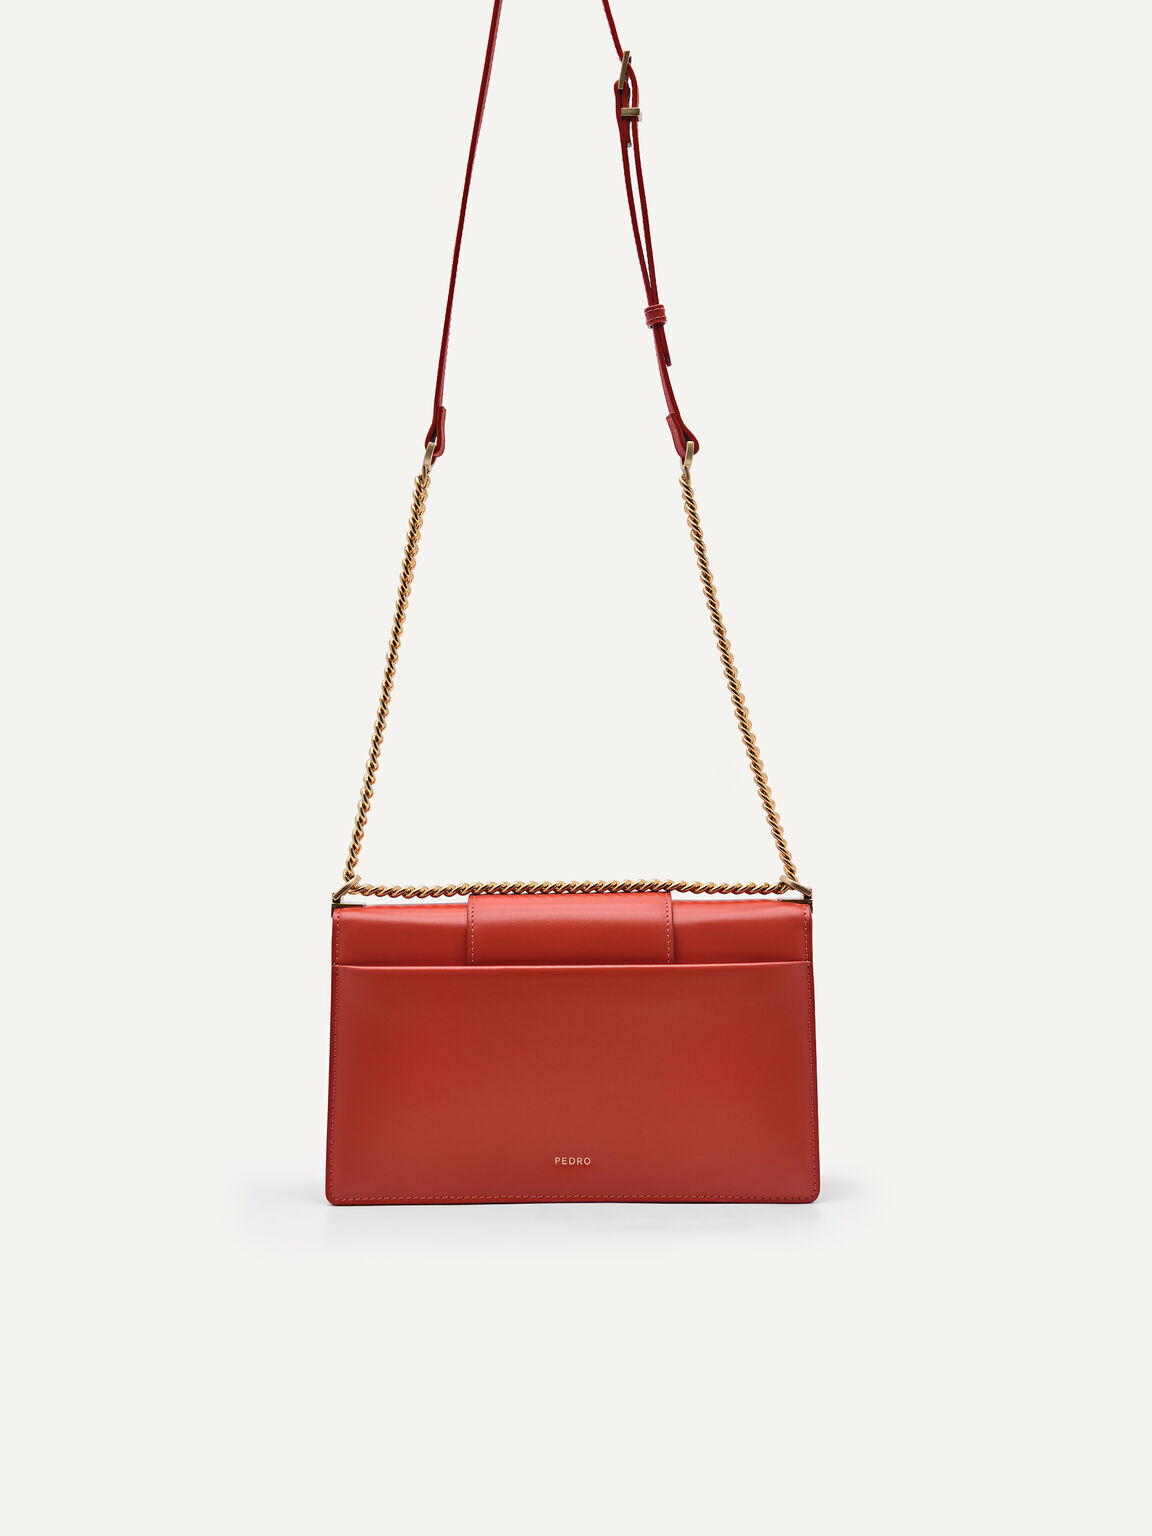 PEDRO Studio Kate Leather Shoulder Bag, Red